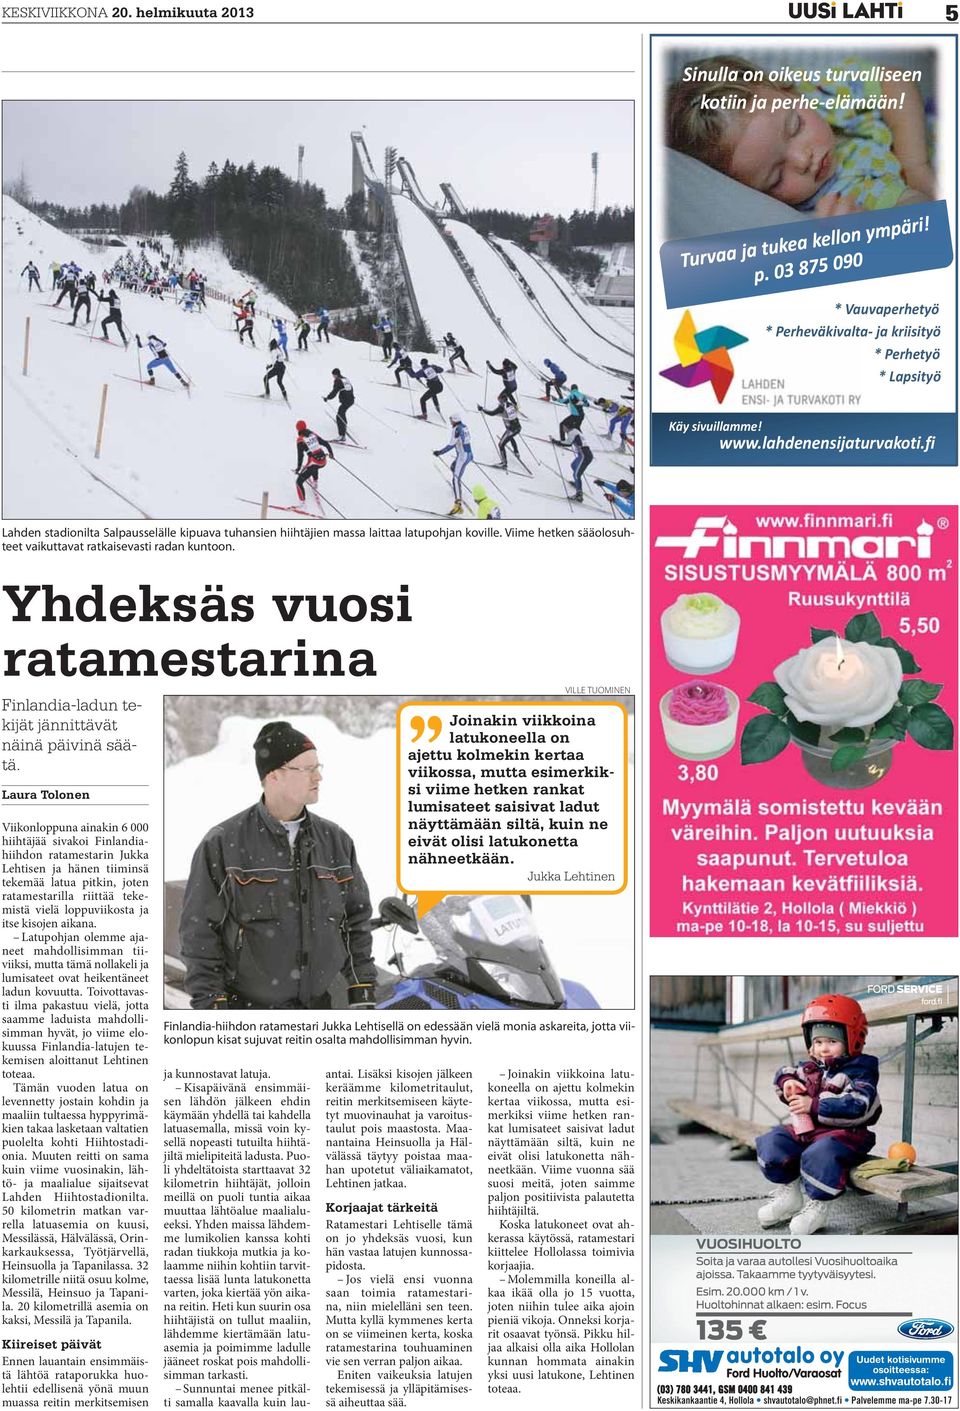 Laura Tolonen Viikonloppuna ainakin 6 000 hiihtäjää sivakoi Finlandiahiihdon ratamestarin Jukka Lehtisen ja hänen tiiminsä tekemää latua pitkin, joten ratamestarilla riittää tekemistä vielä